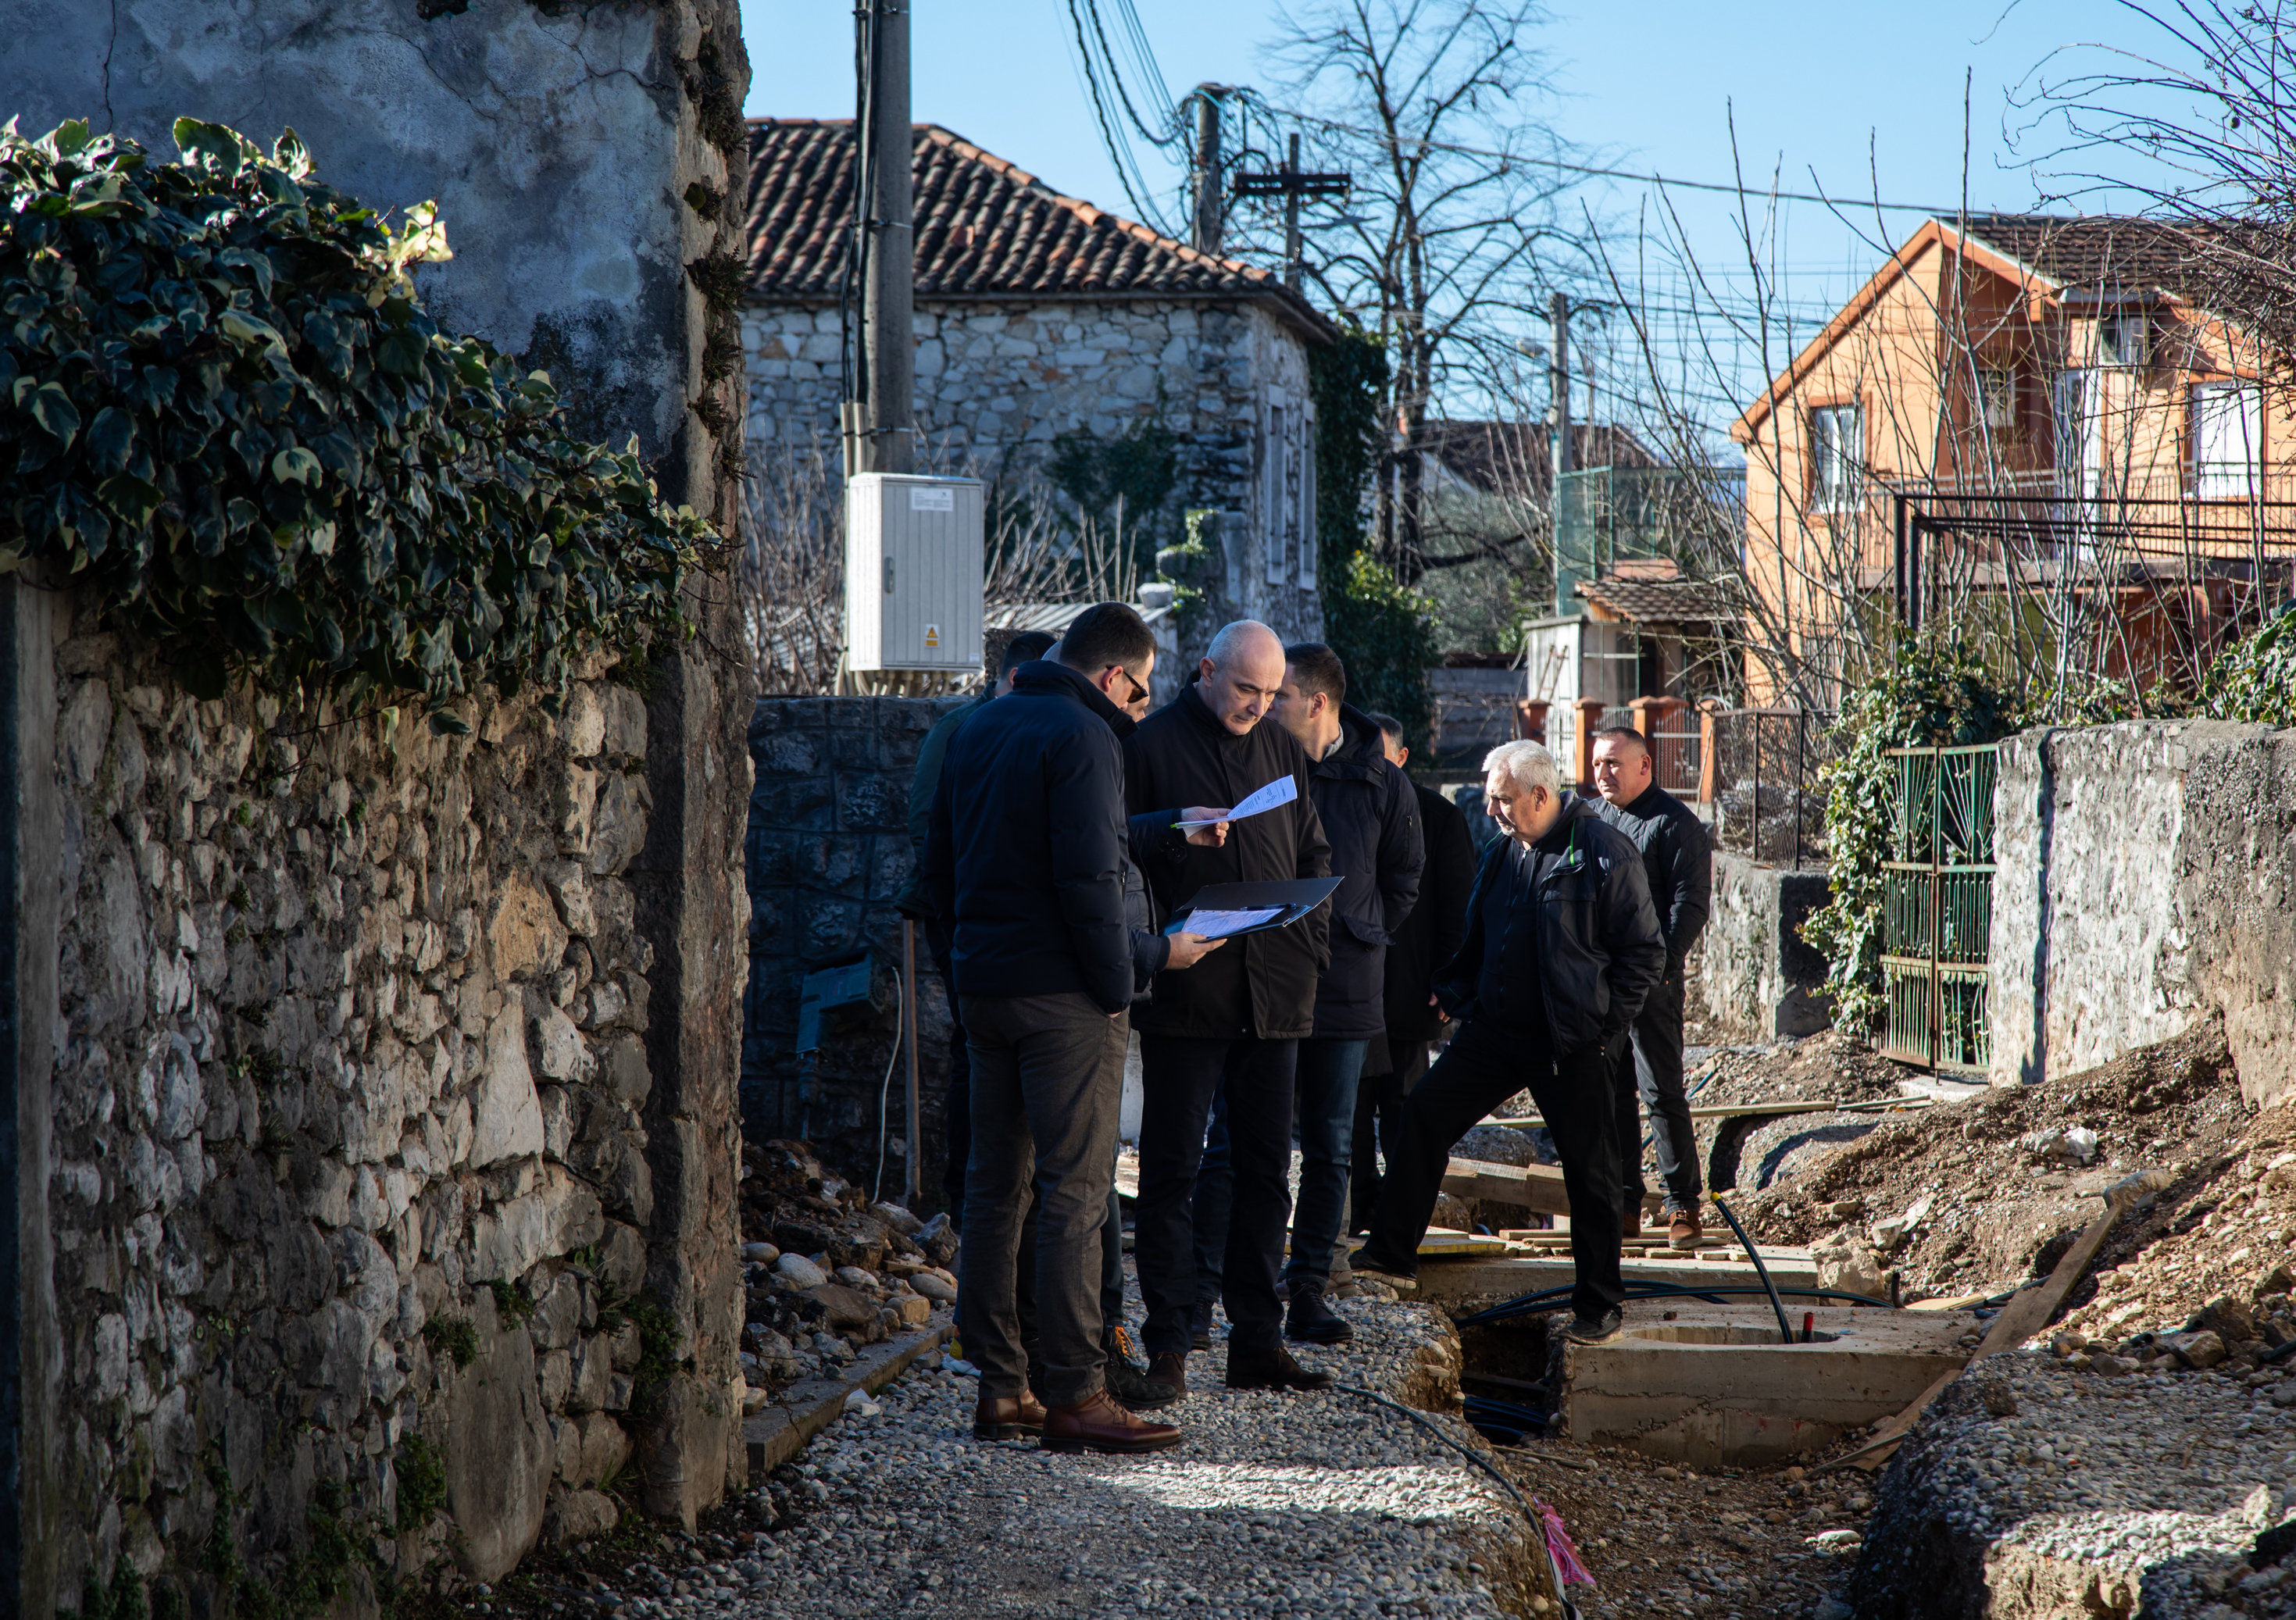 Vuković obišao radove na rekonstrukciji ulica na području Stare varoši